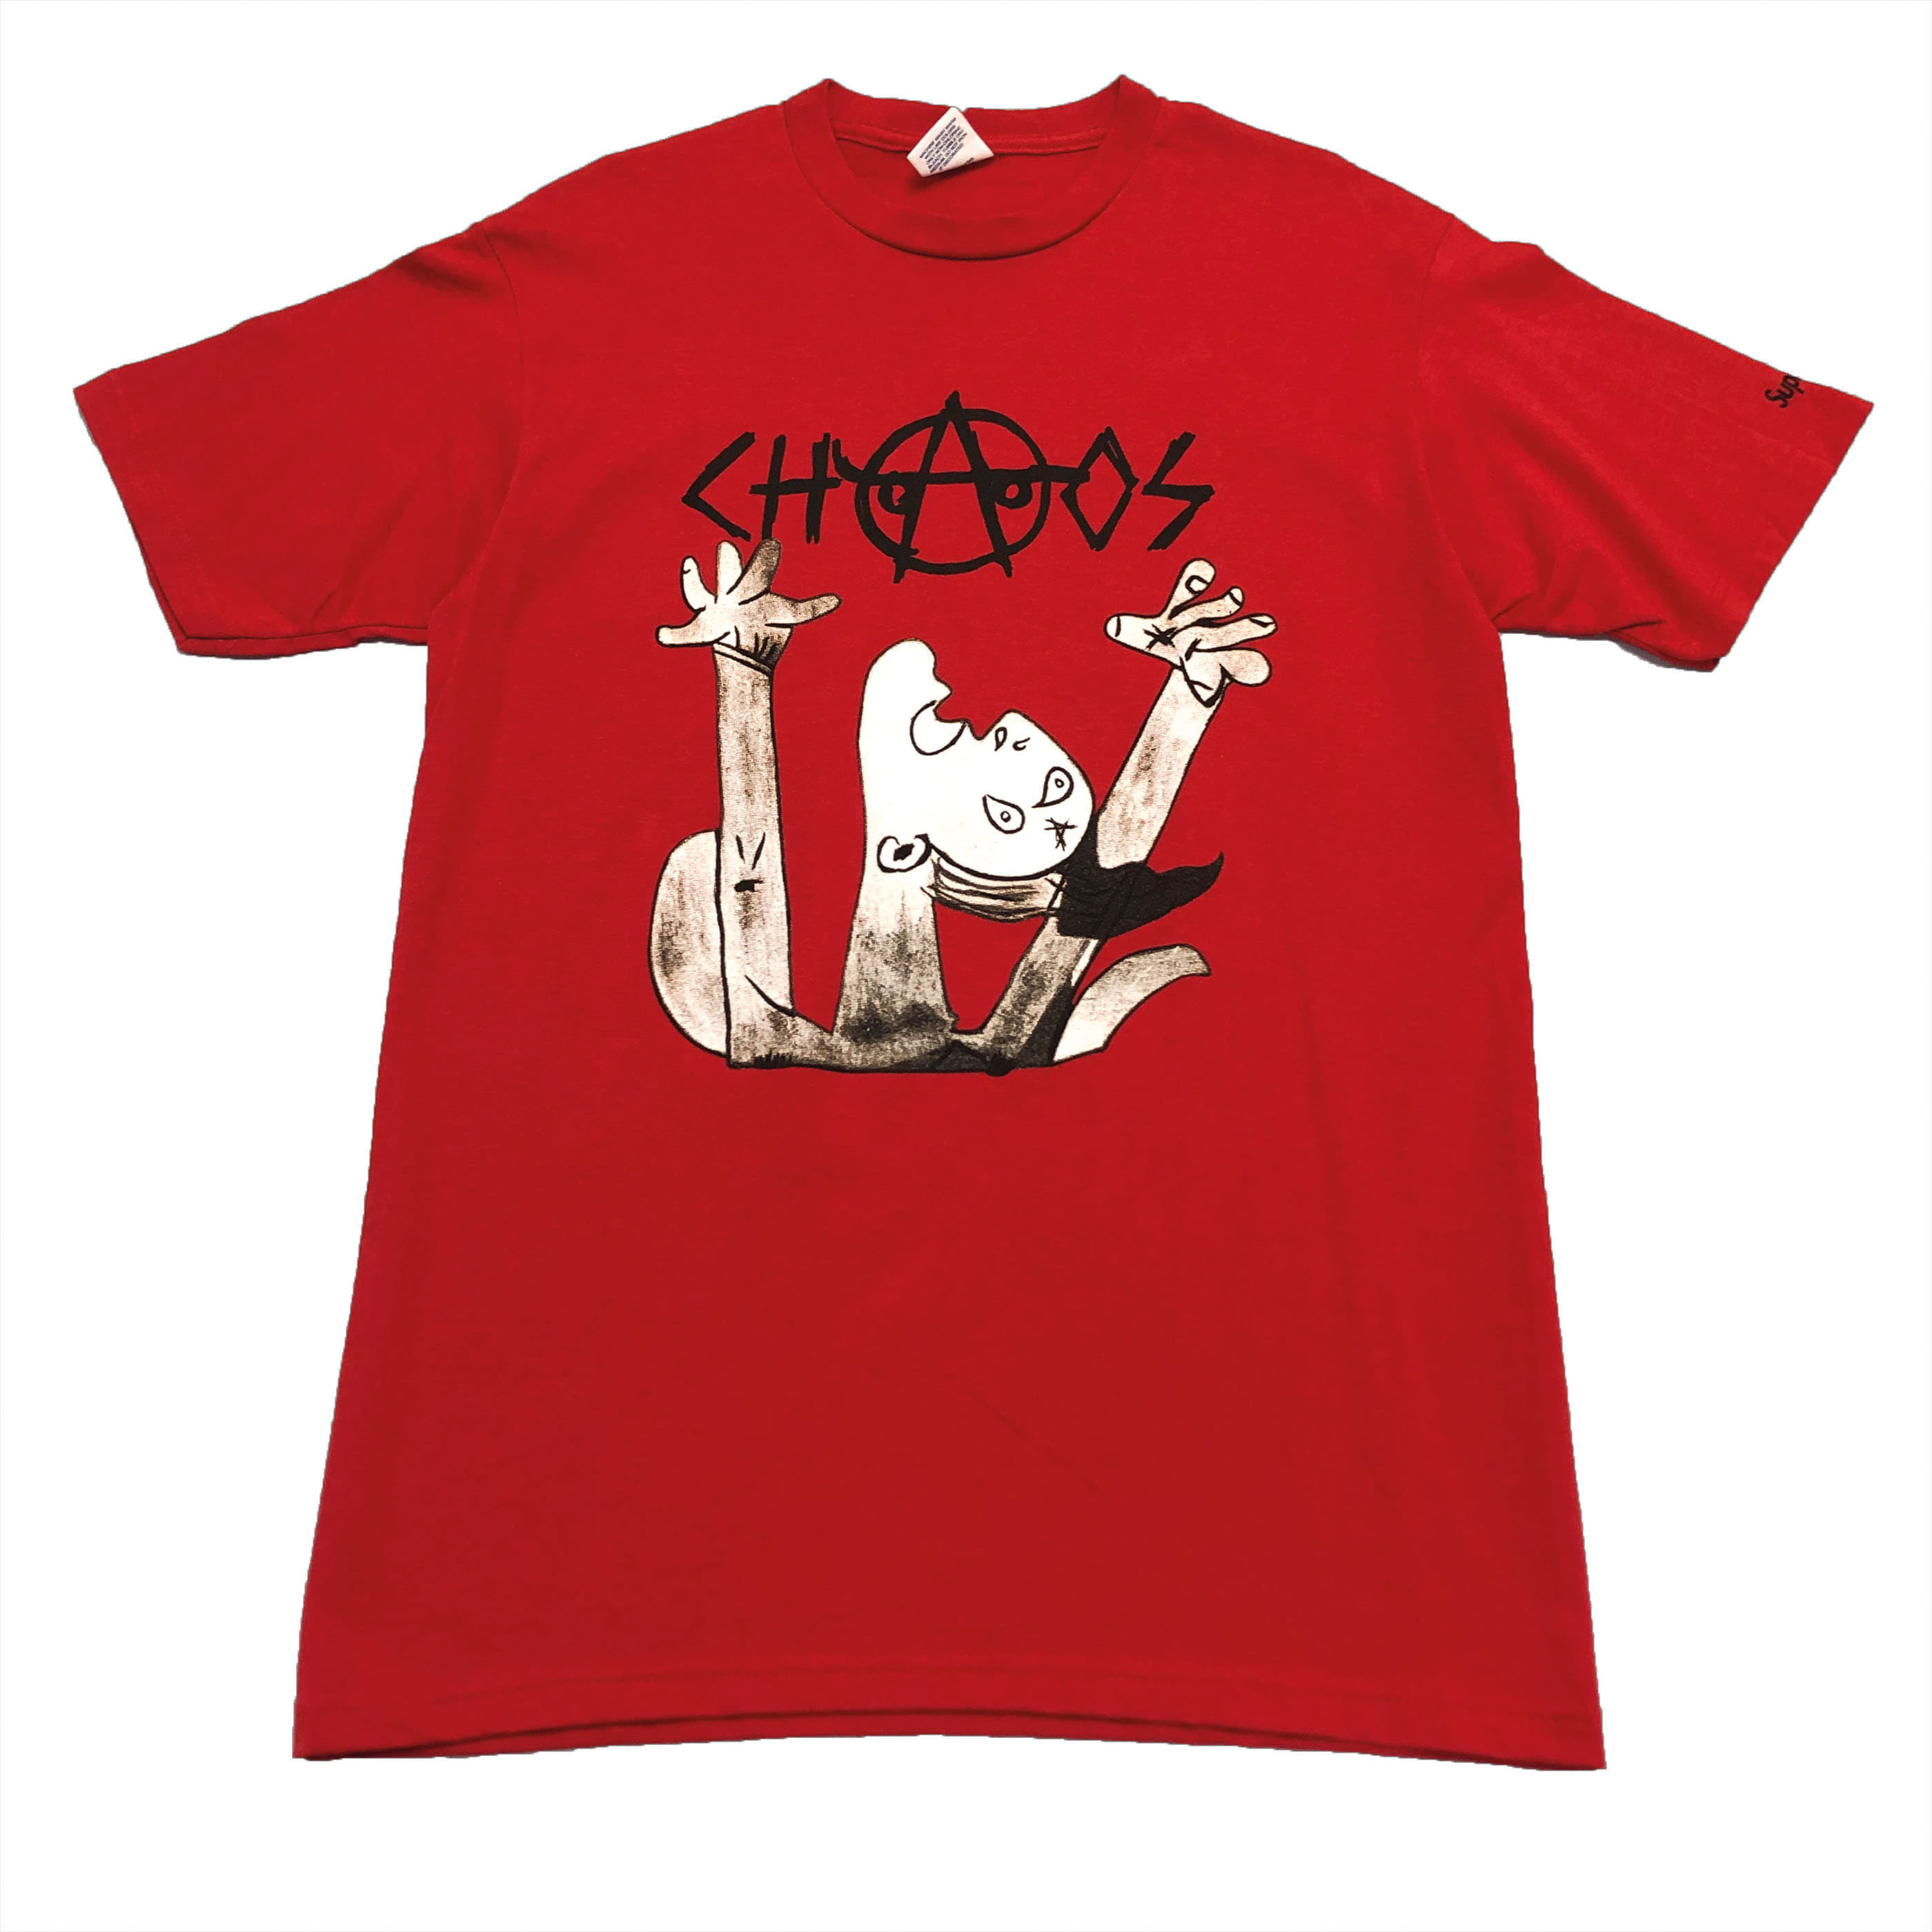 [Supreme] Chaos T-shirt - Size M